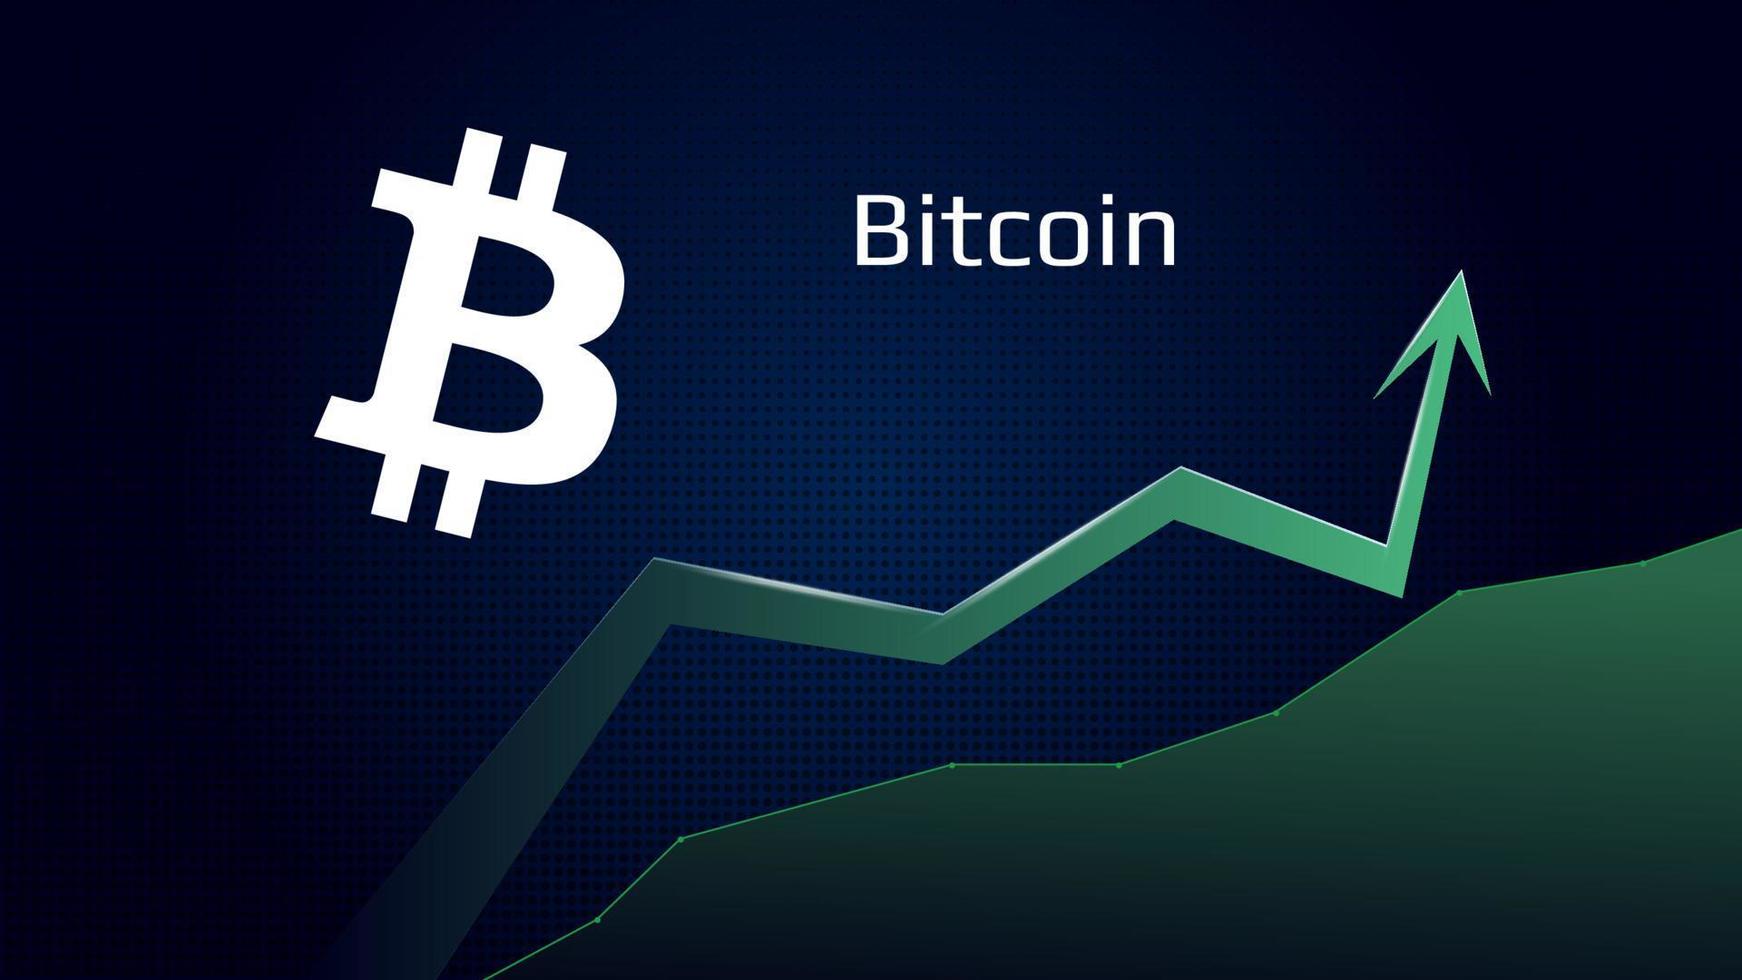 bitcoin BTC i trend uppåt och pris är stigande. crypto mynt symbol och grön upp pil. ta bort flugor till de måne. vektor illustration.